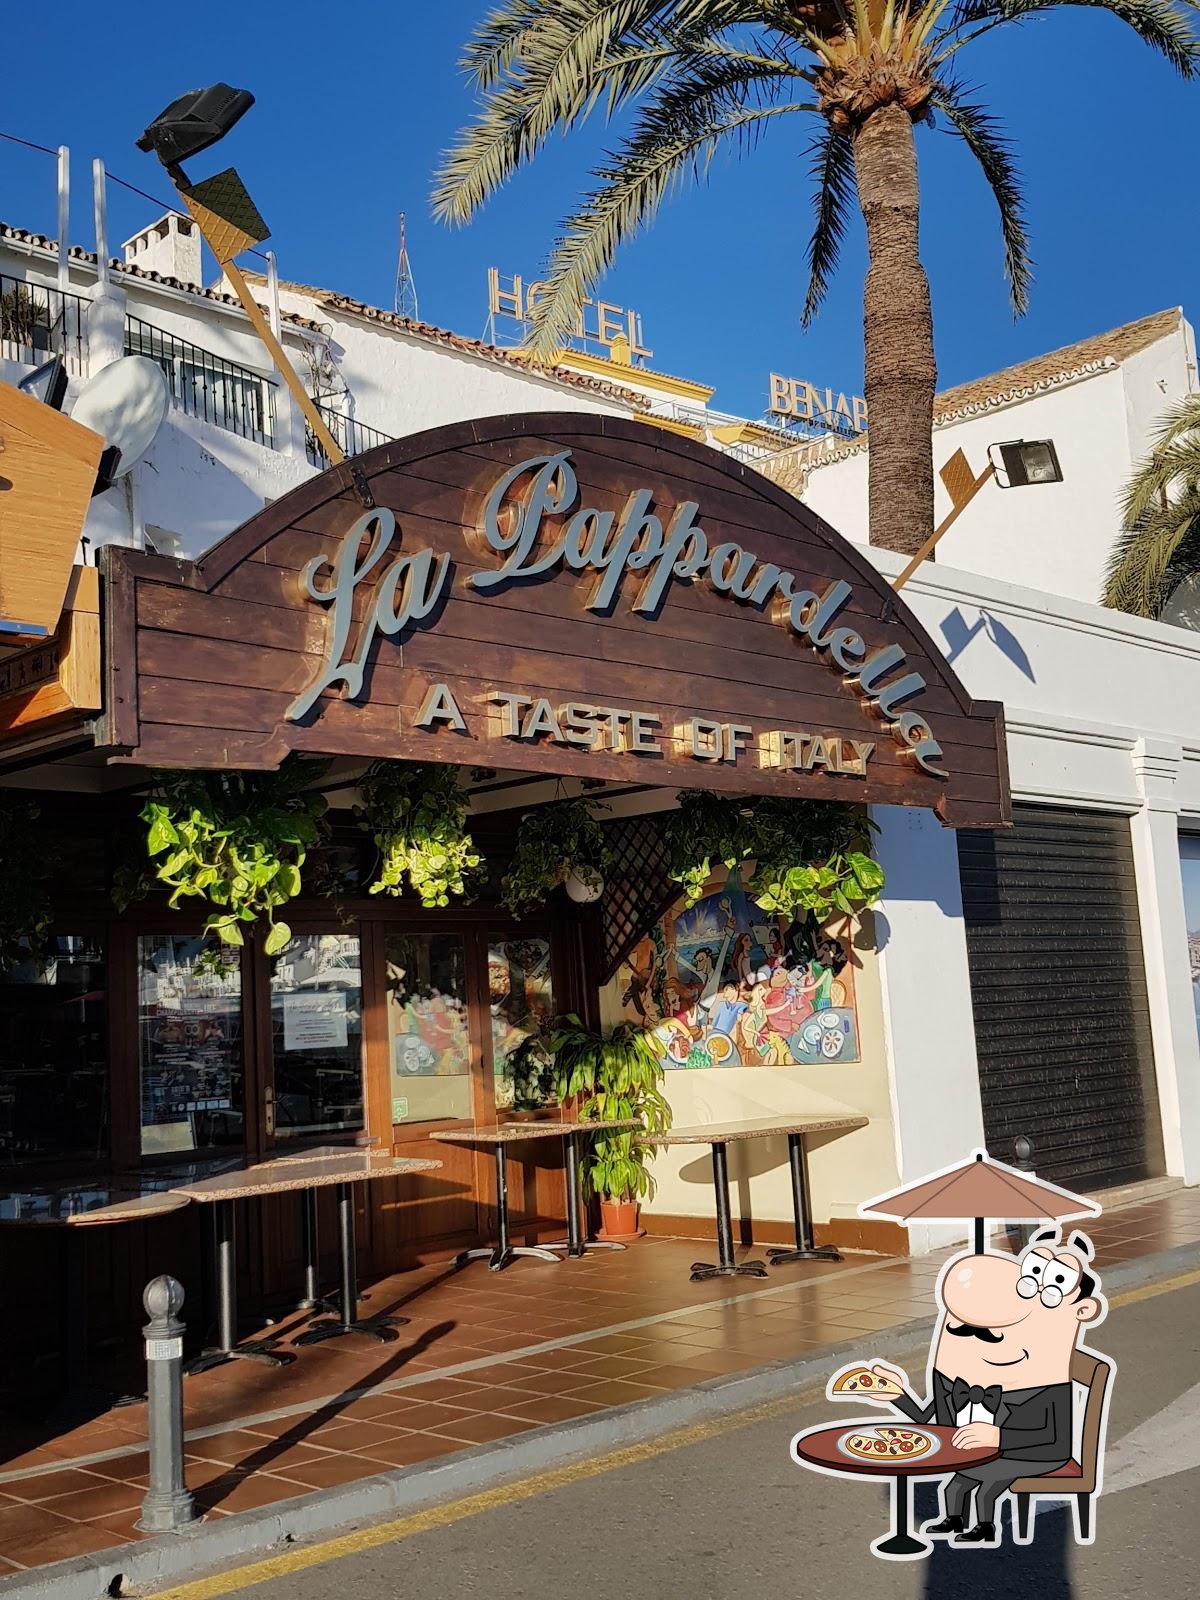 La Pappardella Restaurante Puerto Banus - Marbella Events Guide